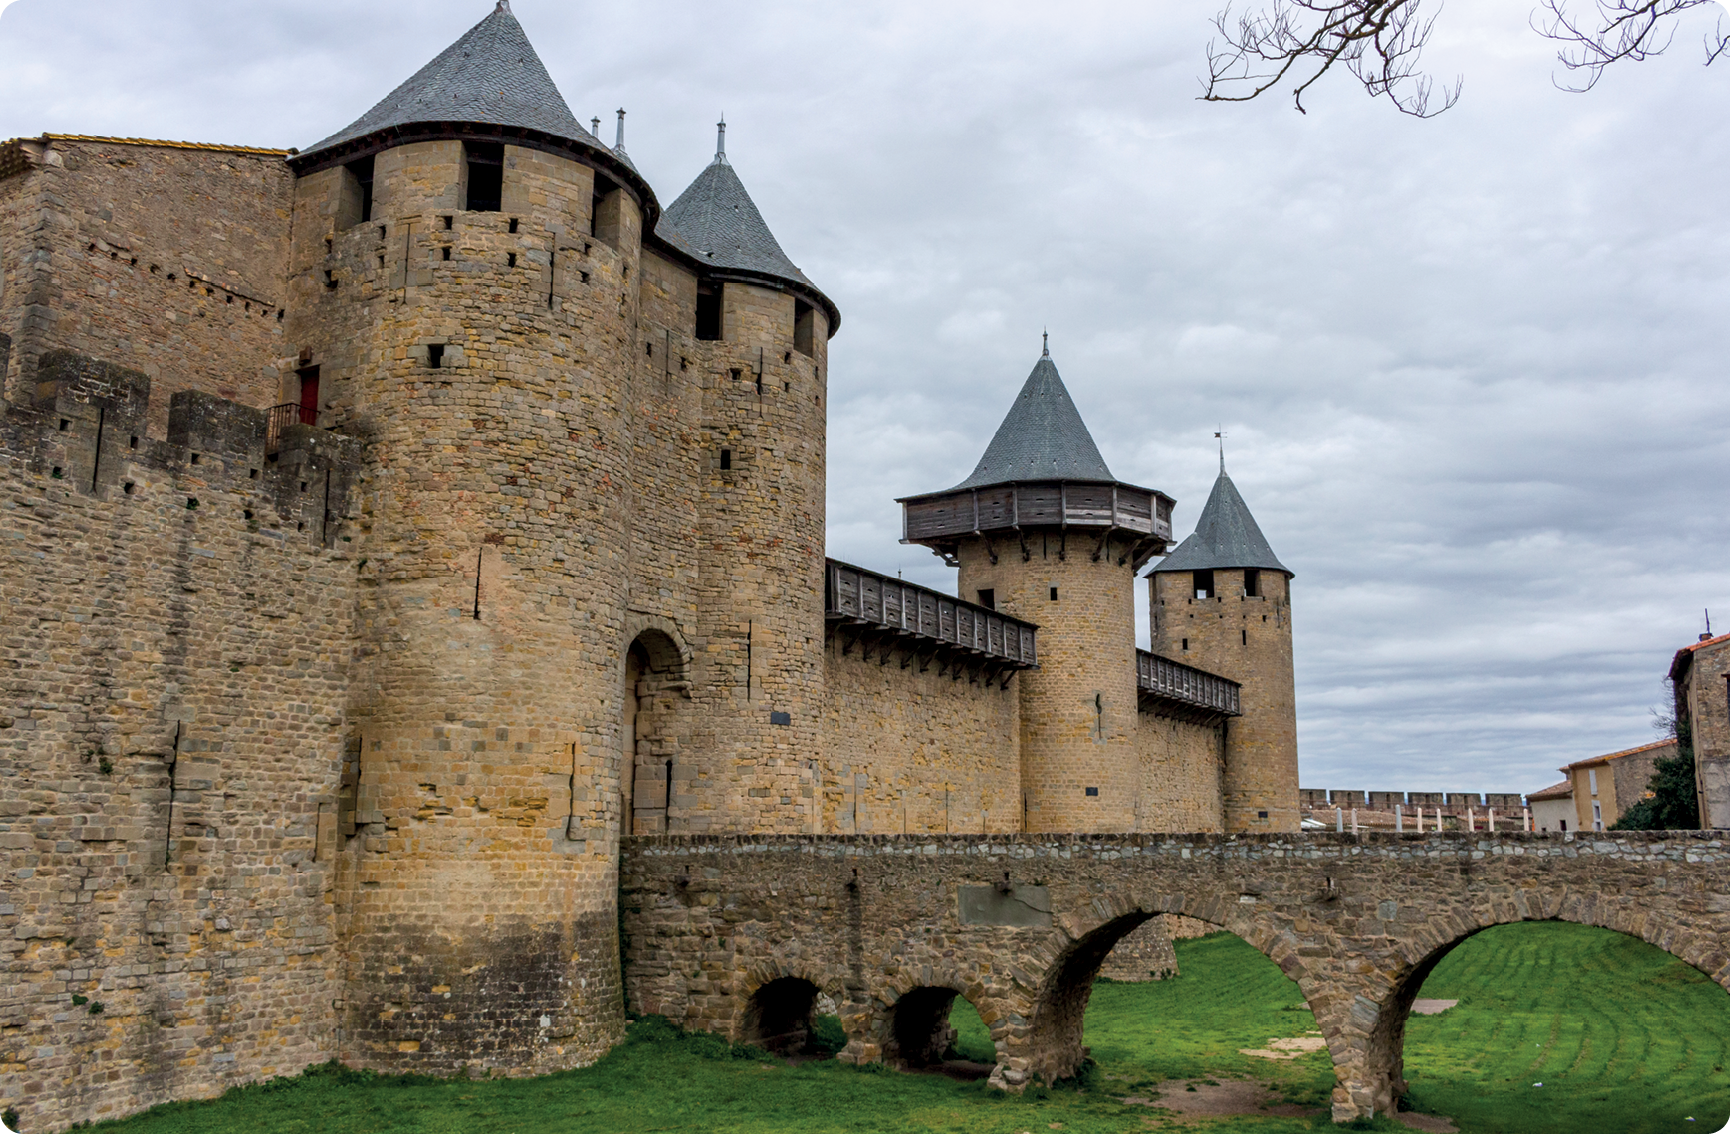 Fotografia. Fachada de castelo de pedra com quatro torres. Em cada torre há uma estrutura no topo em formato de um cone. Na entrada principal, há uma ponte de pedra.